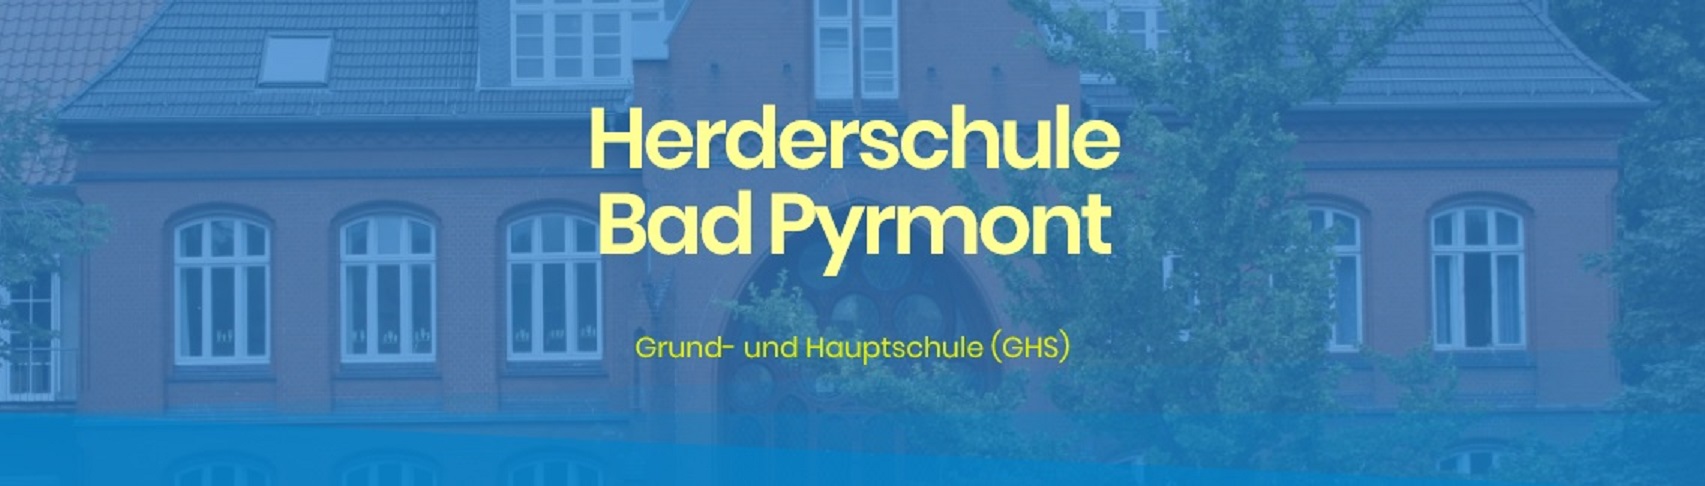 GHS Herderschule Bad Pyrmont